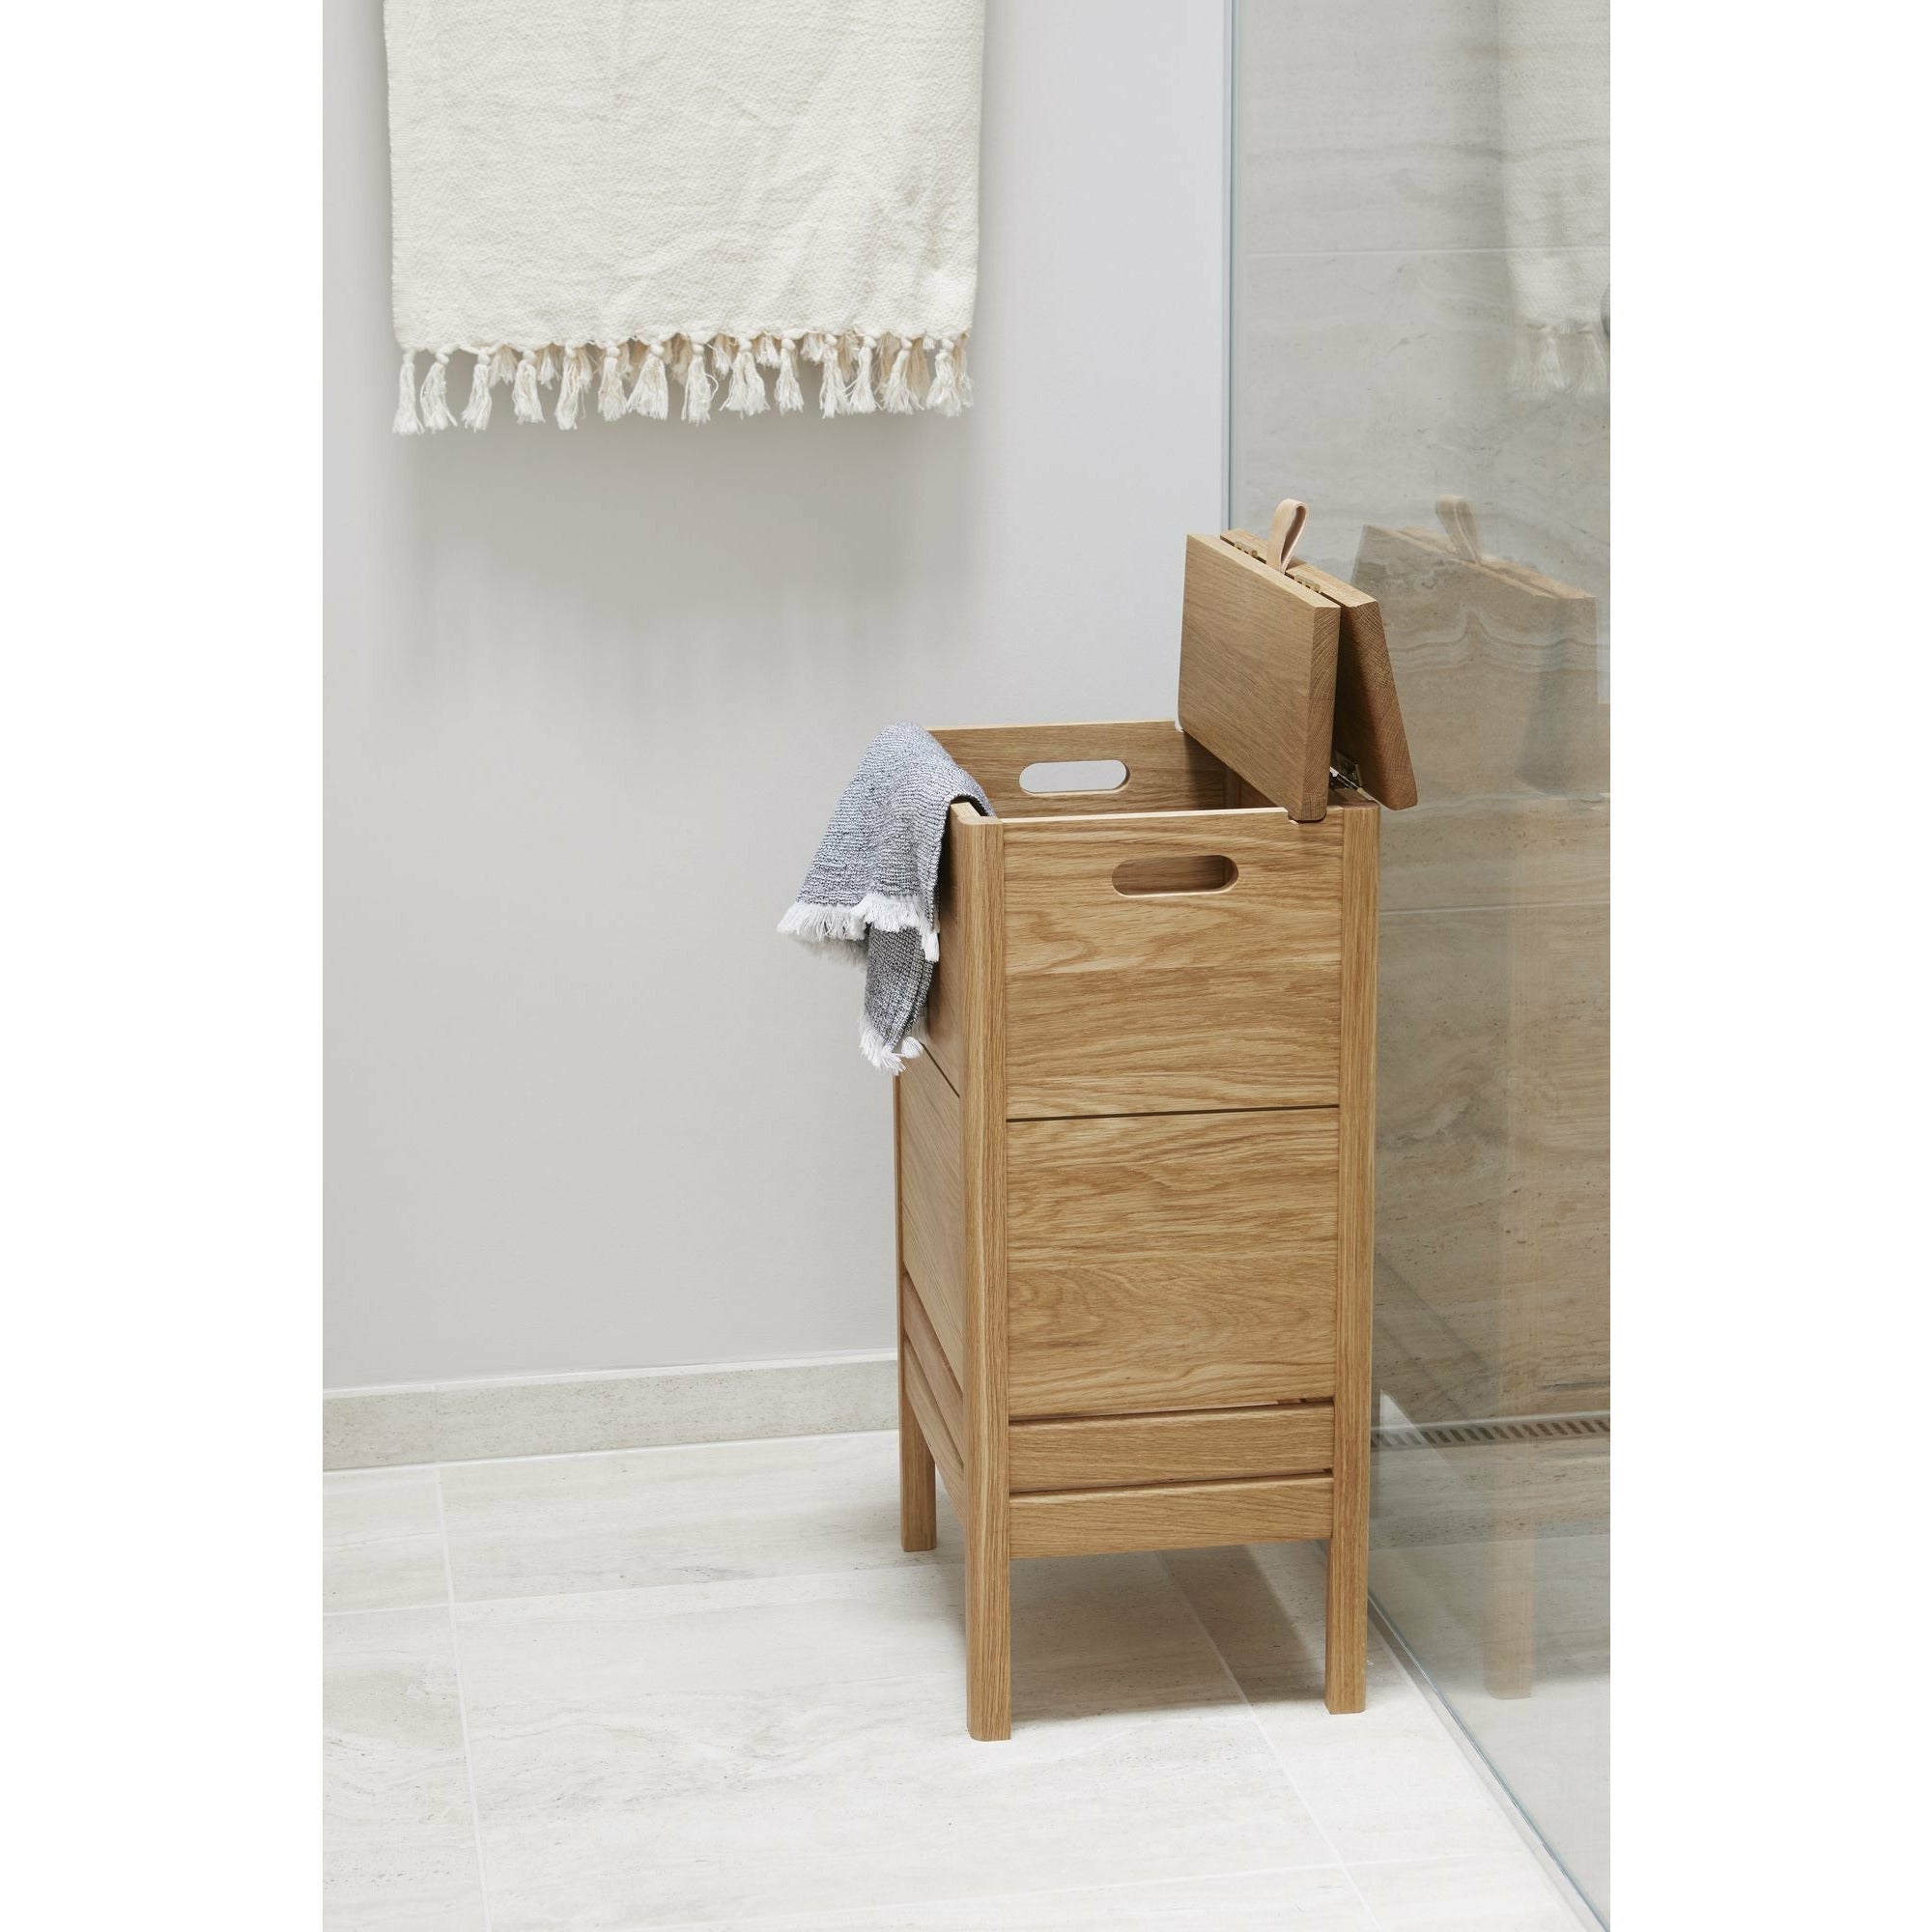 Form & Refine A Line Laundry Box. Oak